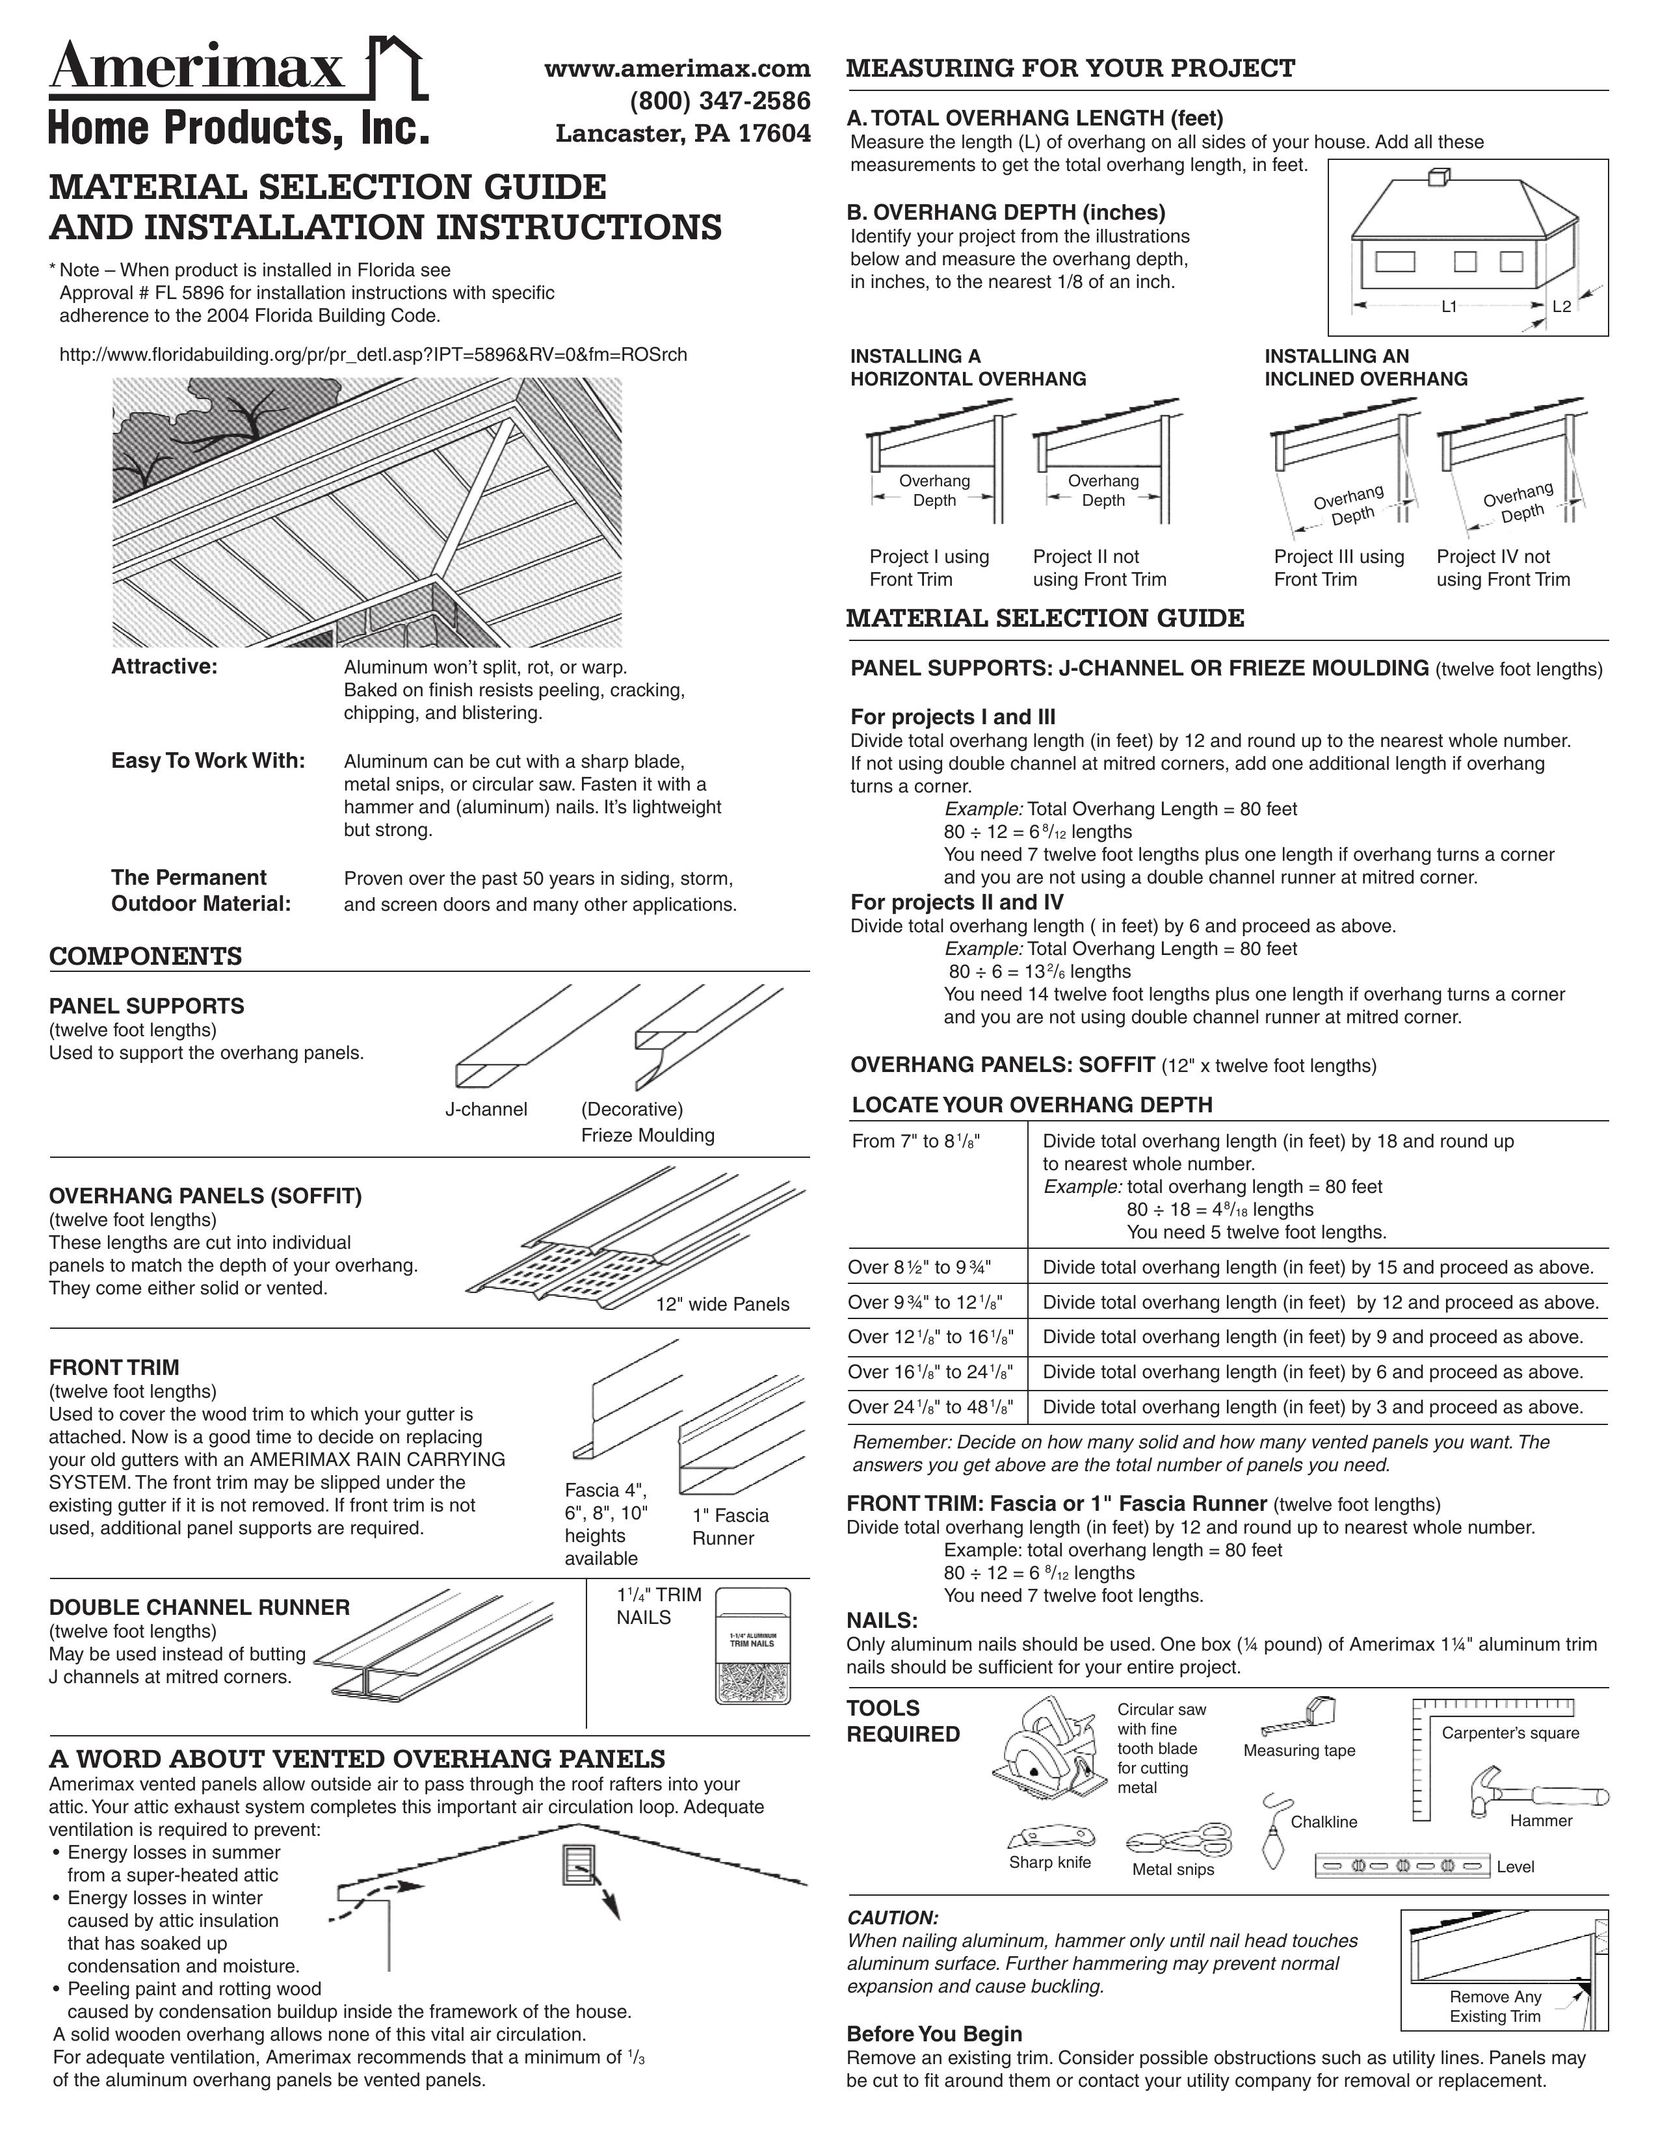 Amerimax Home Material Indoor Furnishings User Manual